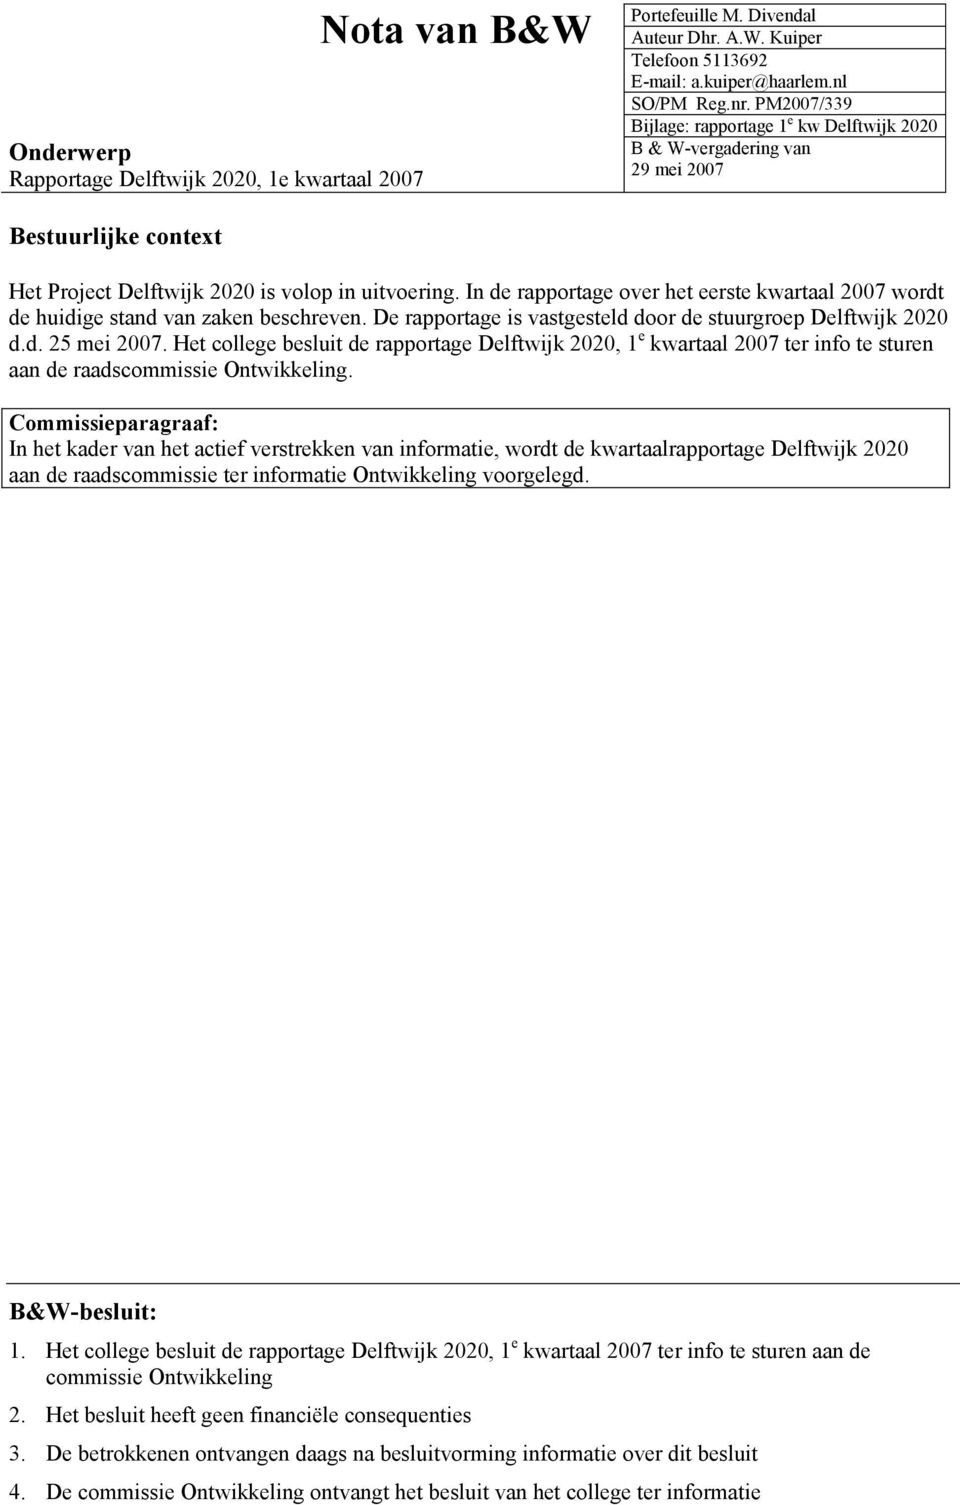 In de rapportage over het eerste kwartaal 2007 wordt de huidige stand van zaken beschreven. De rapportage is vastgesteld door de stuurgroep Delftwijk 2020 d.d. 25 mei 2007.